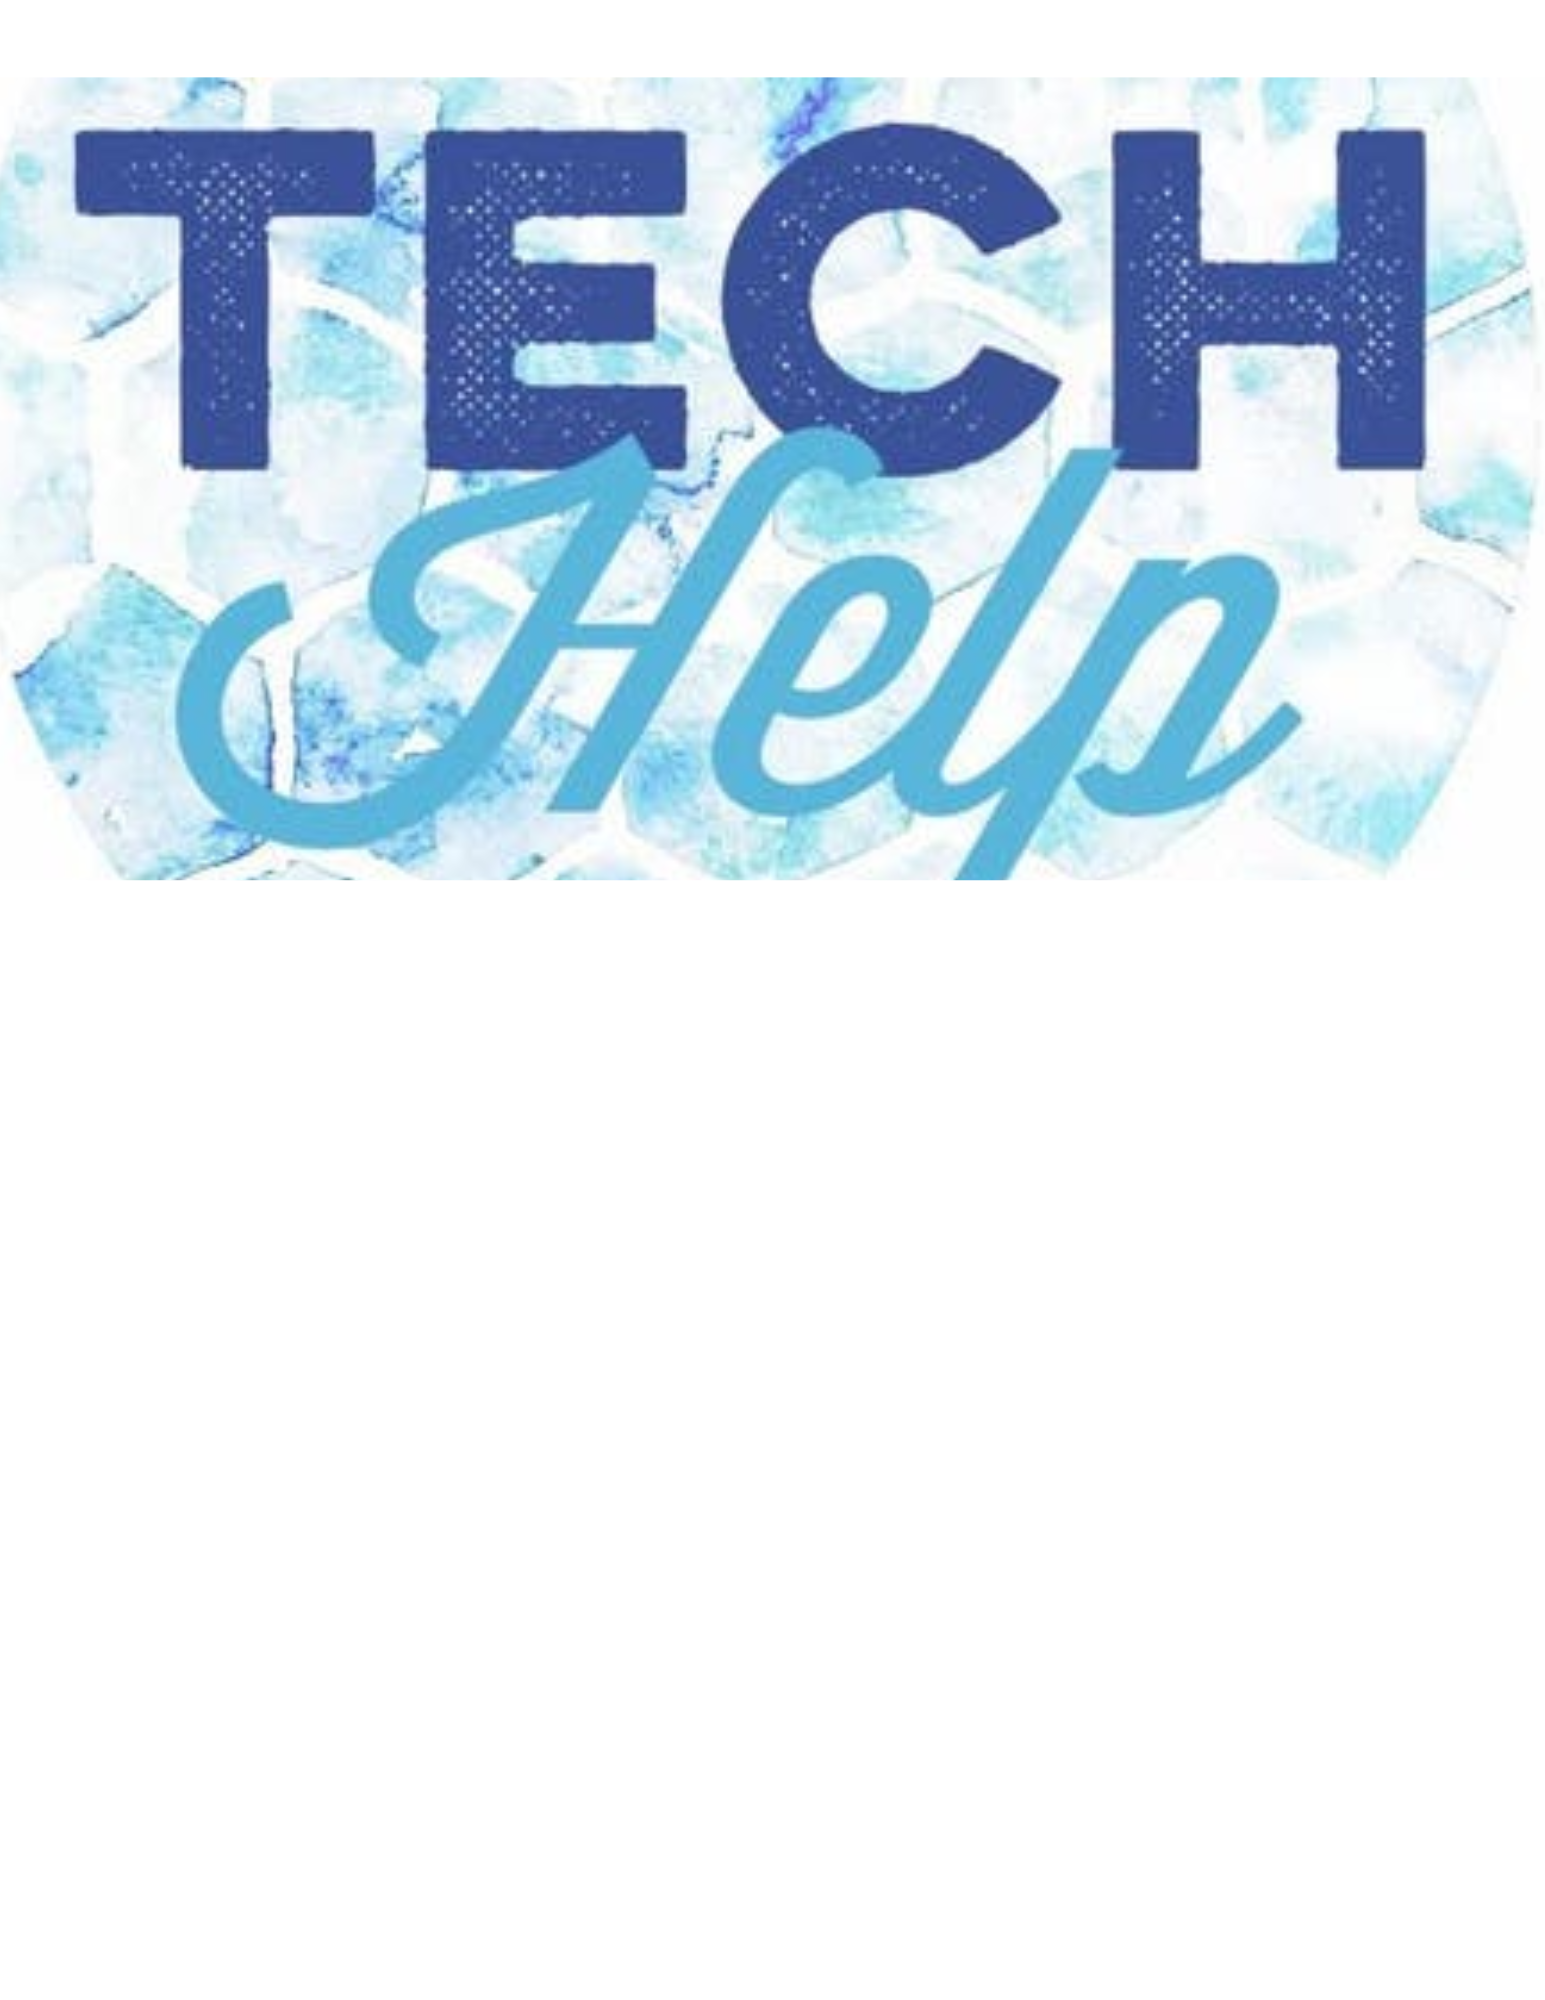 Tech Help written in blue